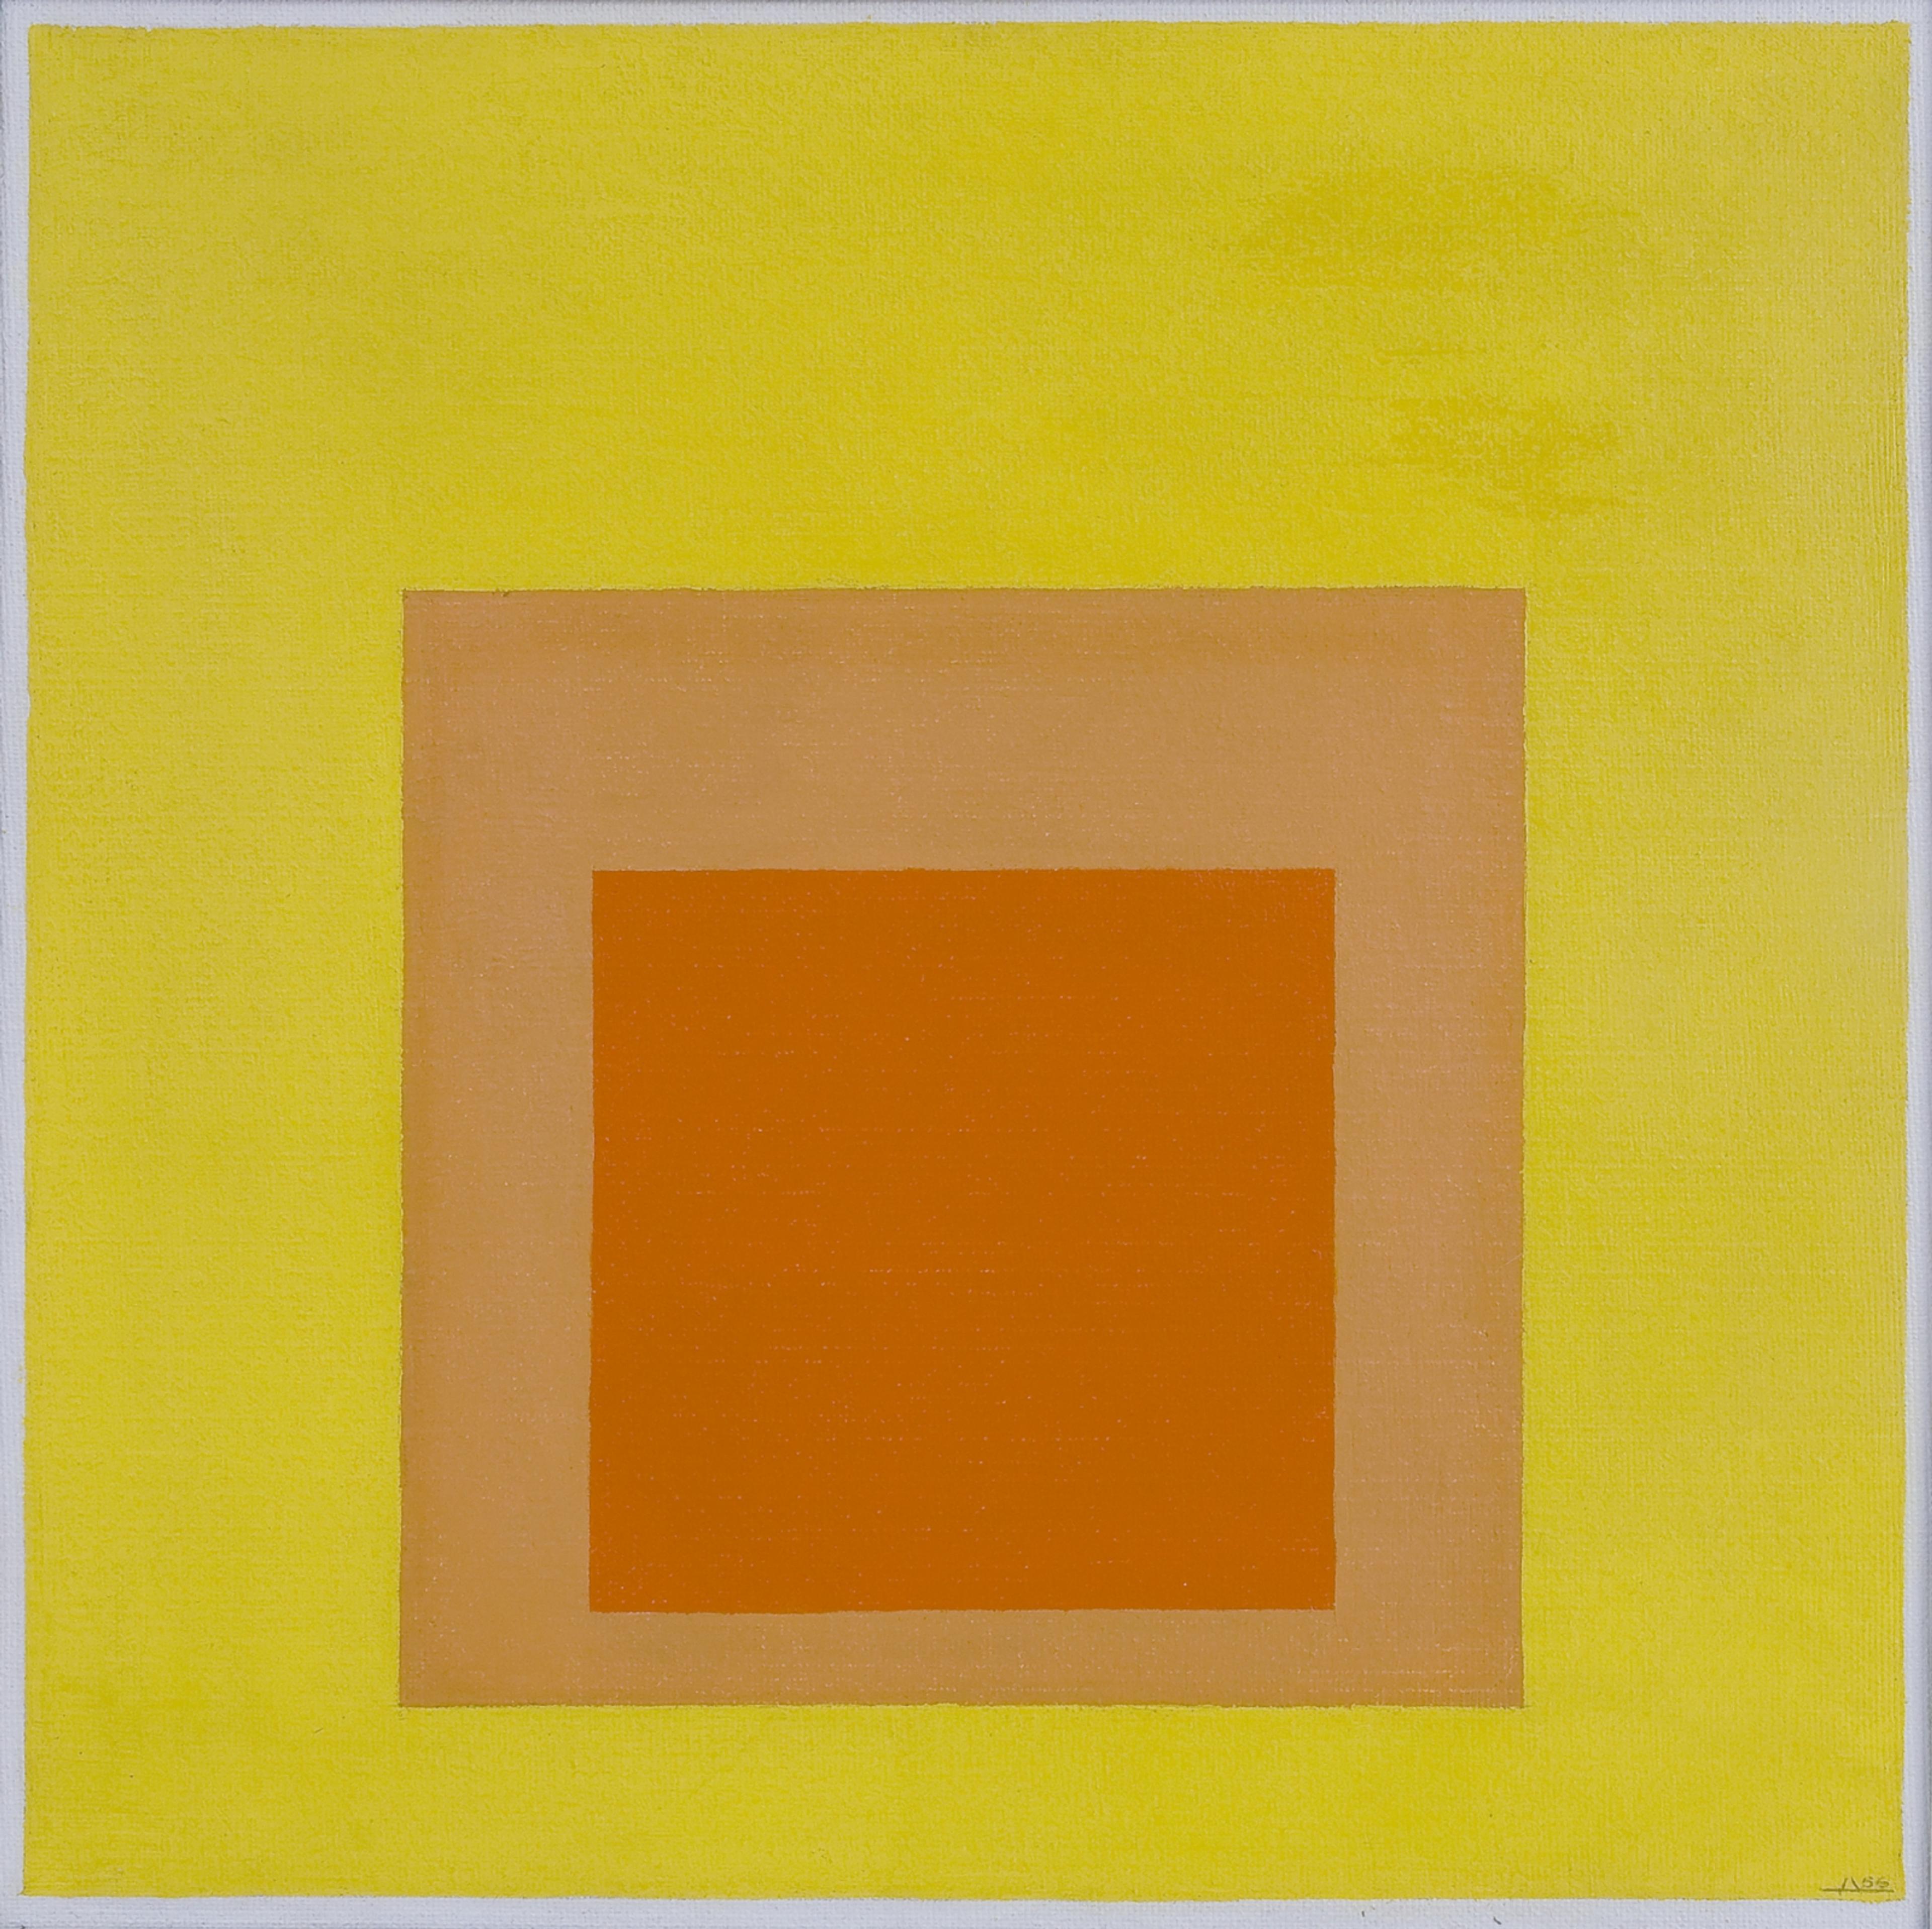 abstrakt maleri av kvadrater i gul og oransjetoner.